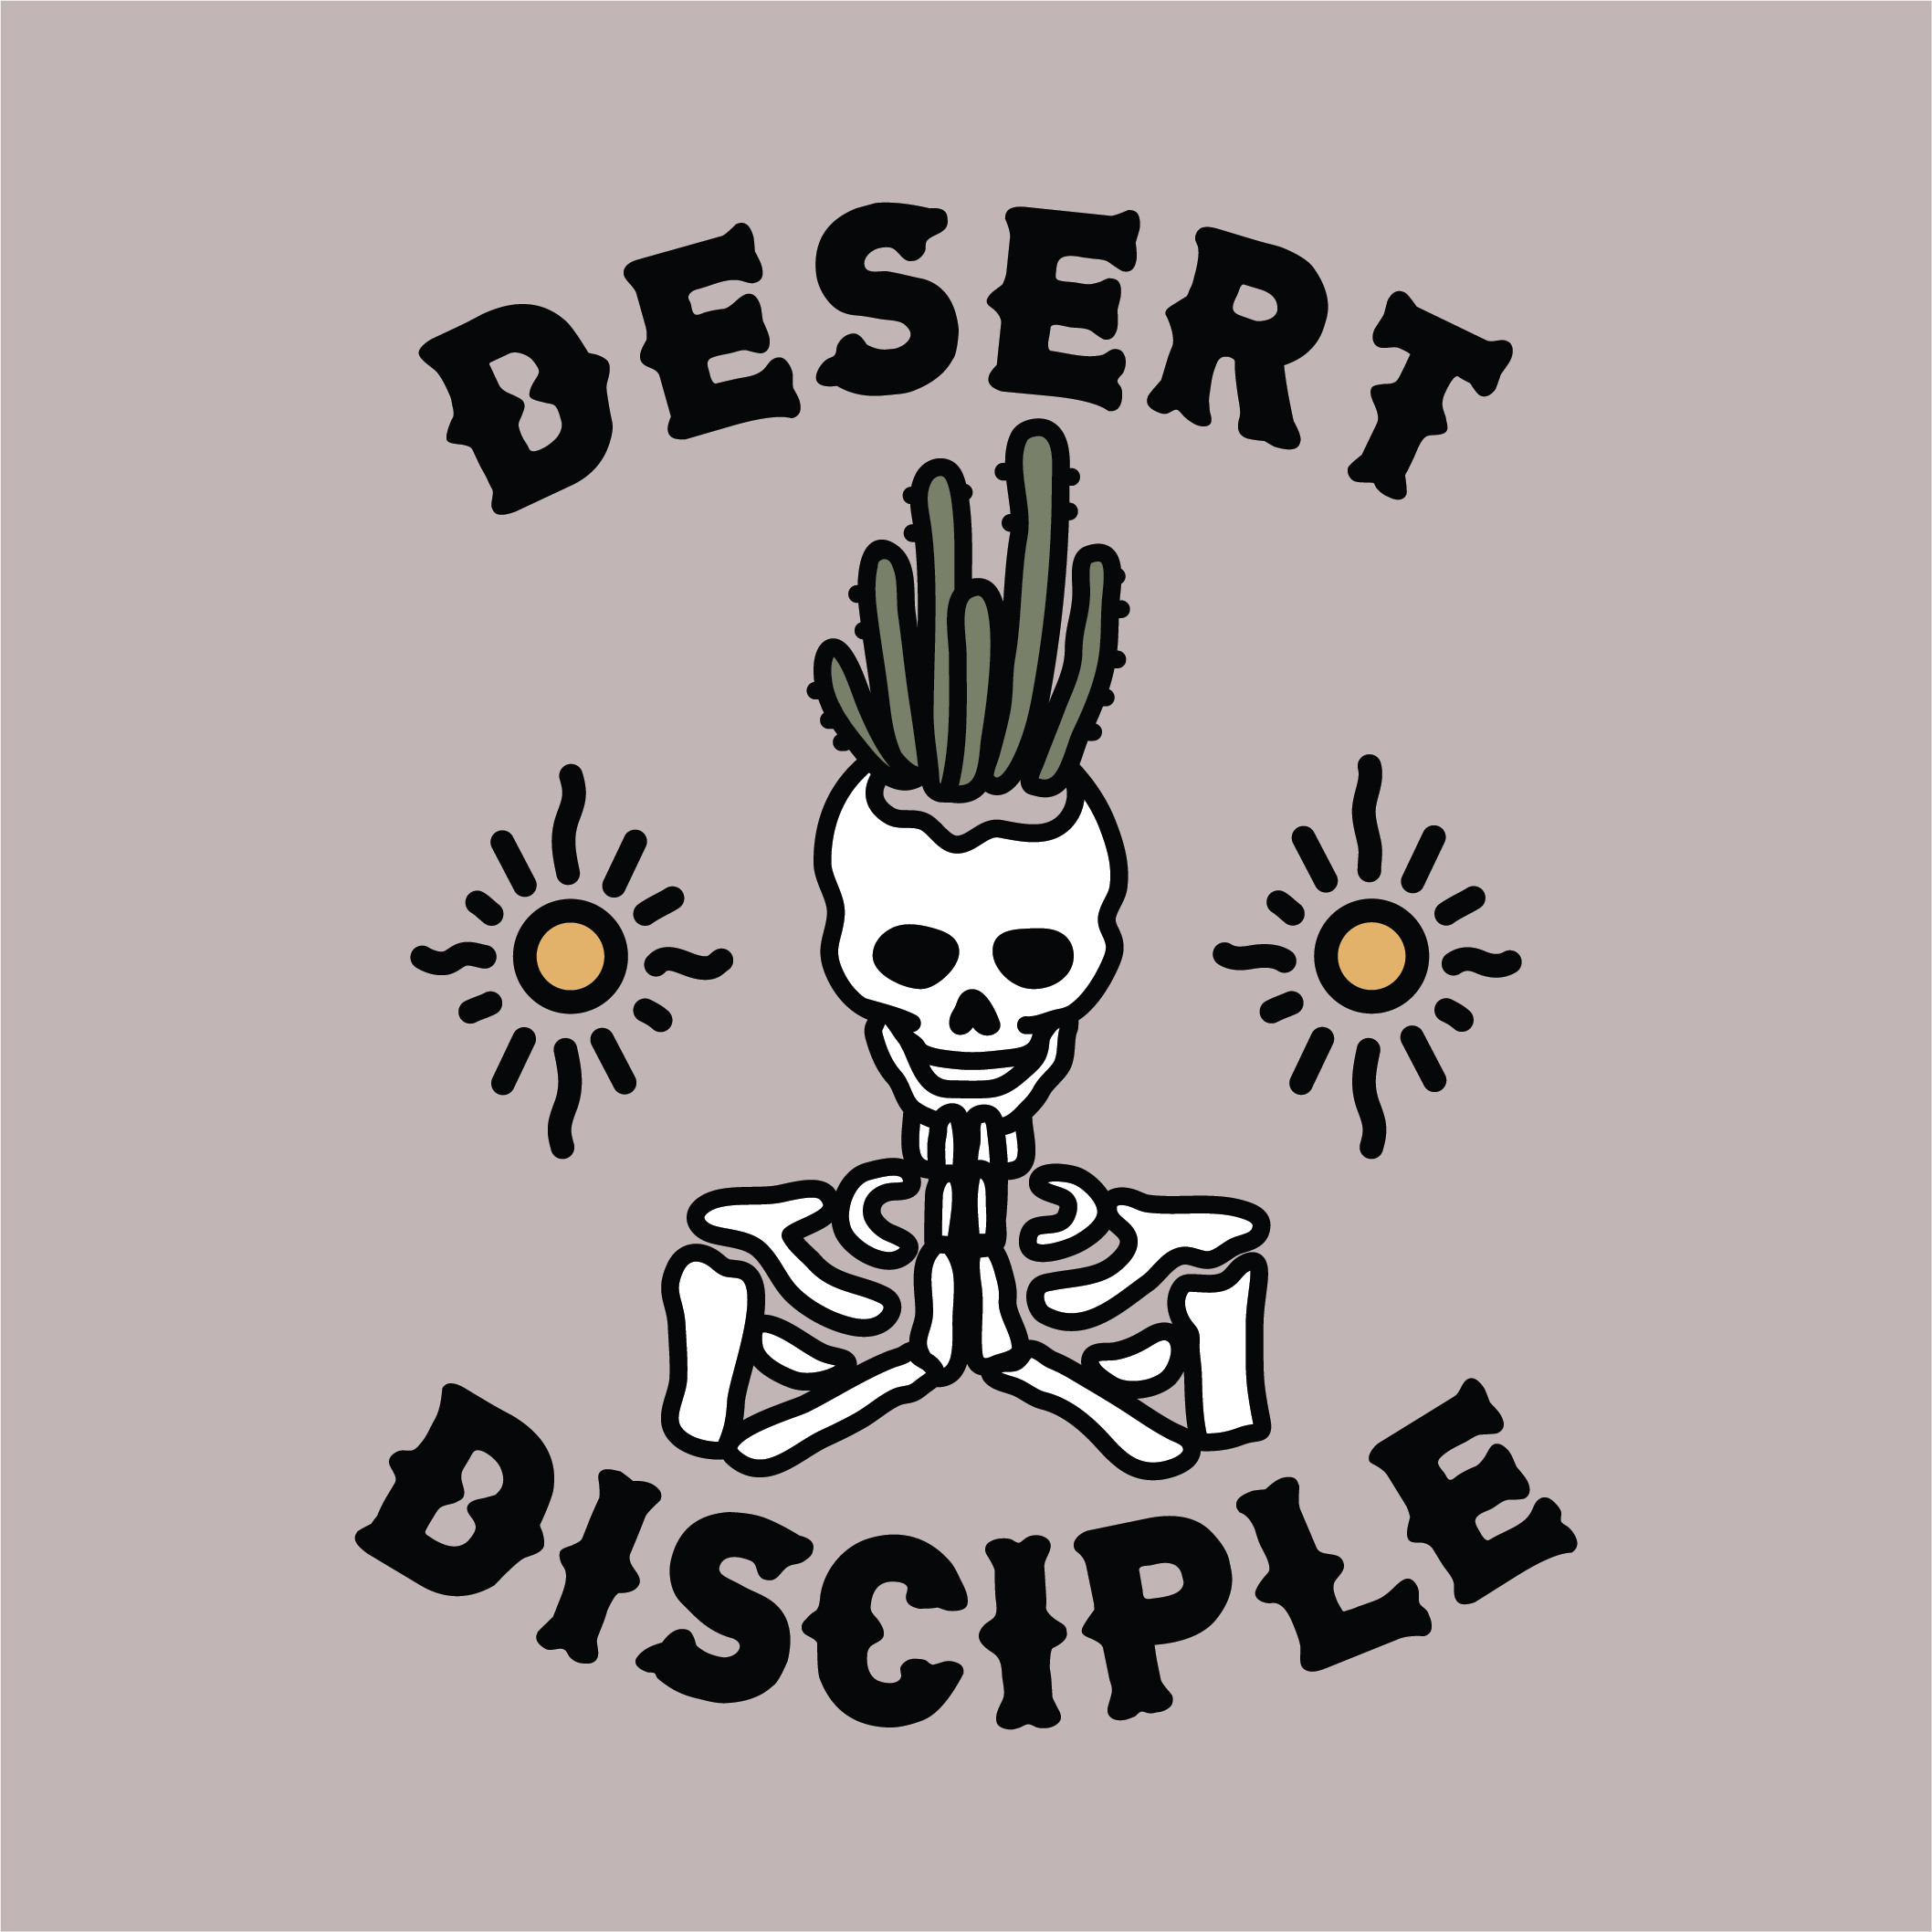 Iconic Arizona Desert Disciple Unisex Tee